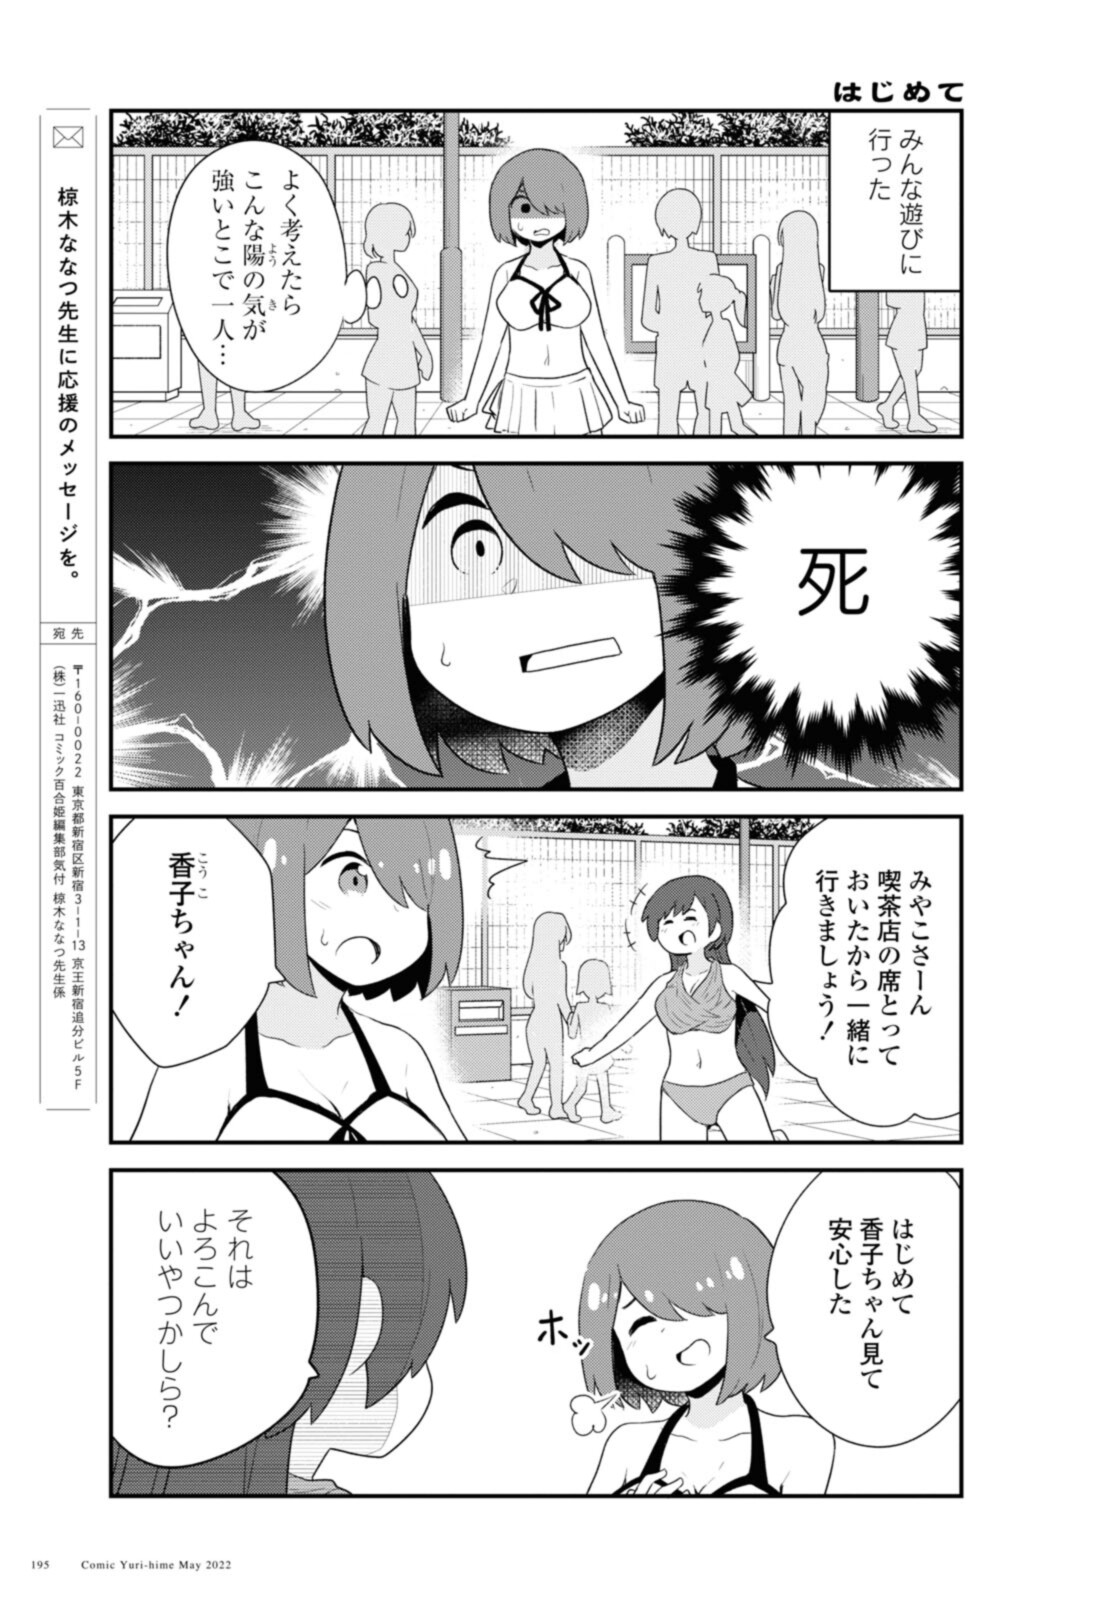 Watashi ni Tenshi ga Maiorita! - Chapter 95 - Page 13